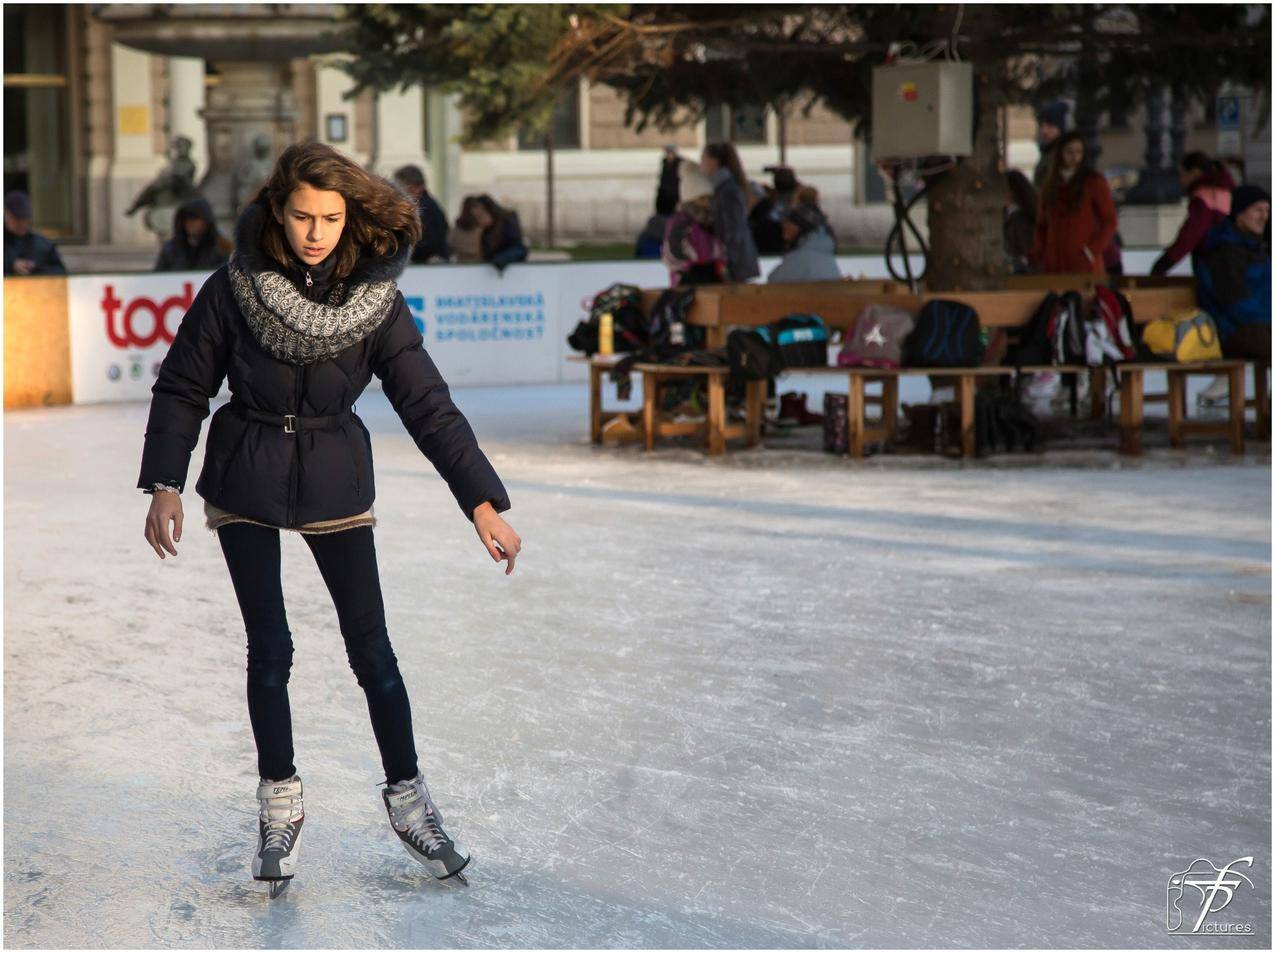 滑冰运动的女孩人物图片